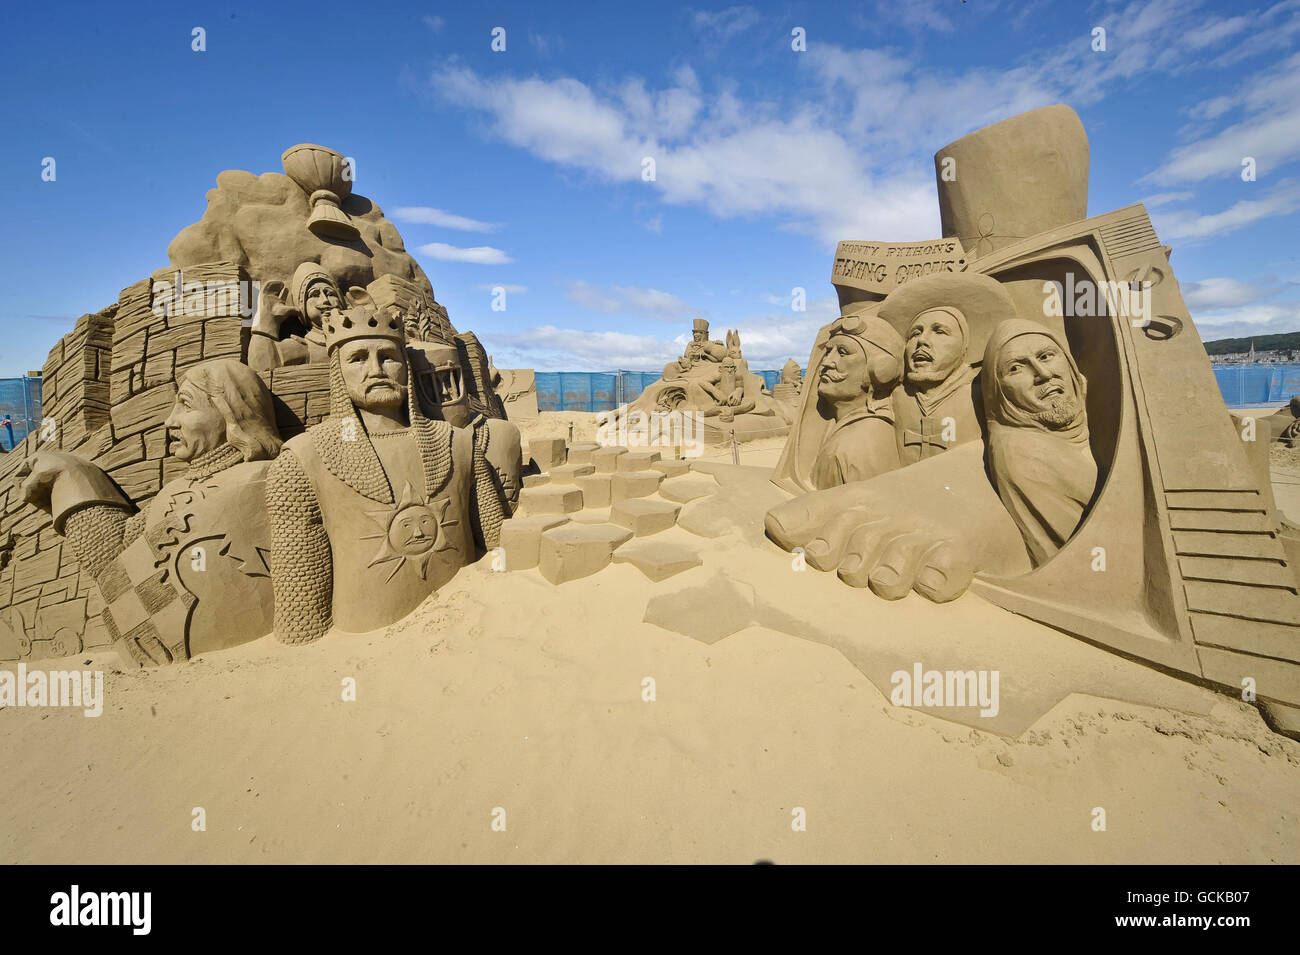 Une sculpture des Monty Python provenant du film The Holy Graal (à gauche) et de la série télévisée Monty pythons Flying Circus dans le Weston-super-Mare Sand Sculpture Festival sur la plage, qui cette année a le thème et la célébration de toutes choses britanniques. Banque D'Images